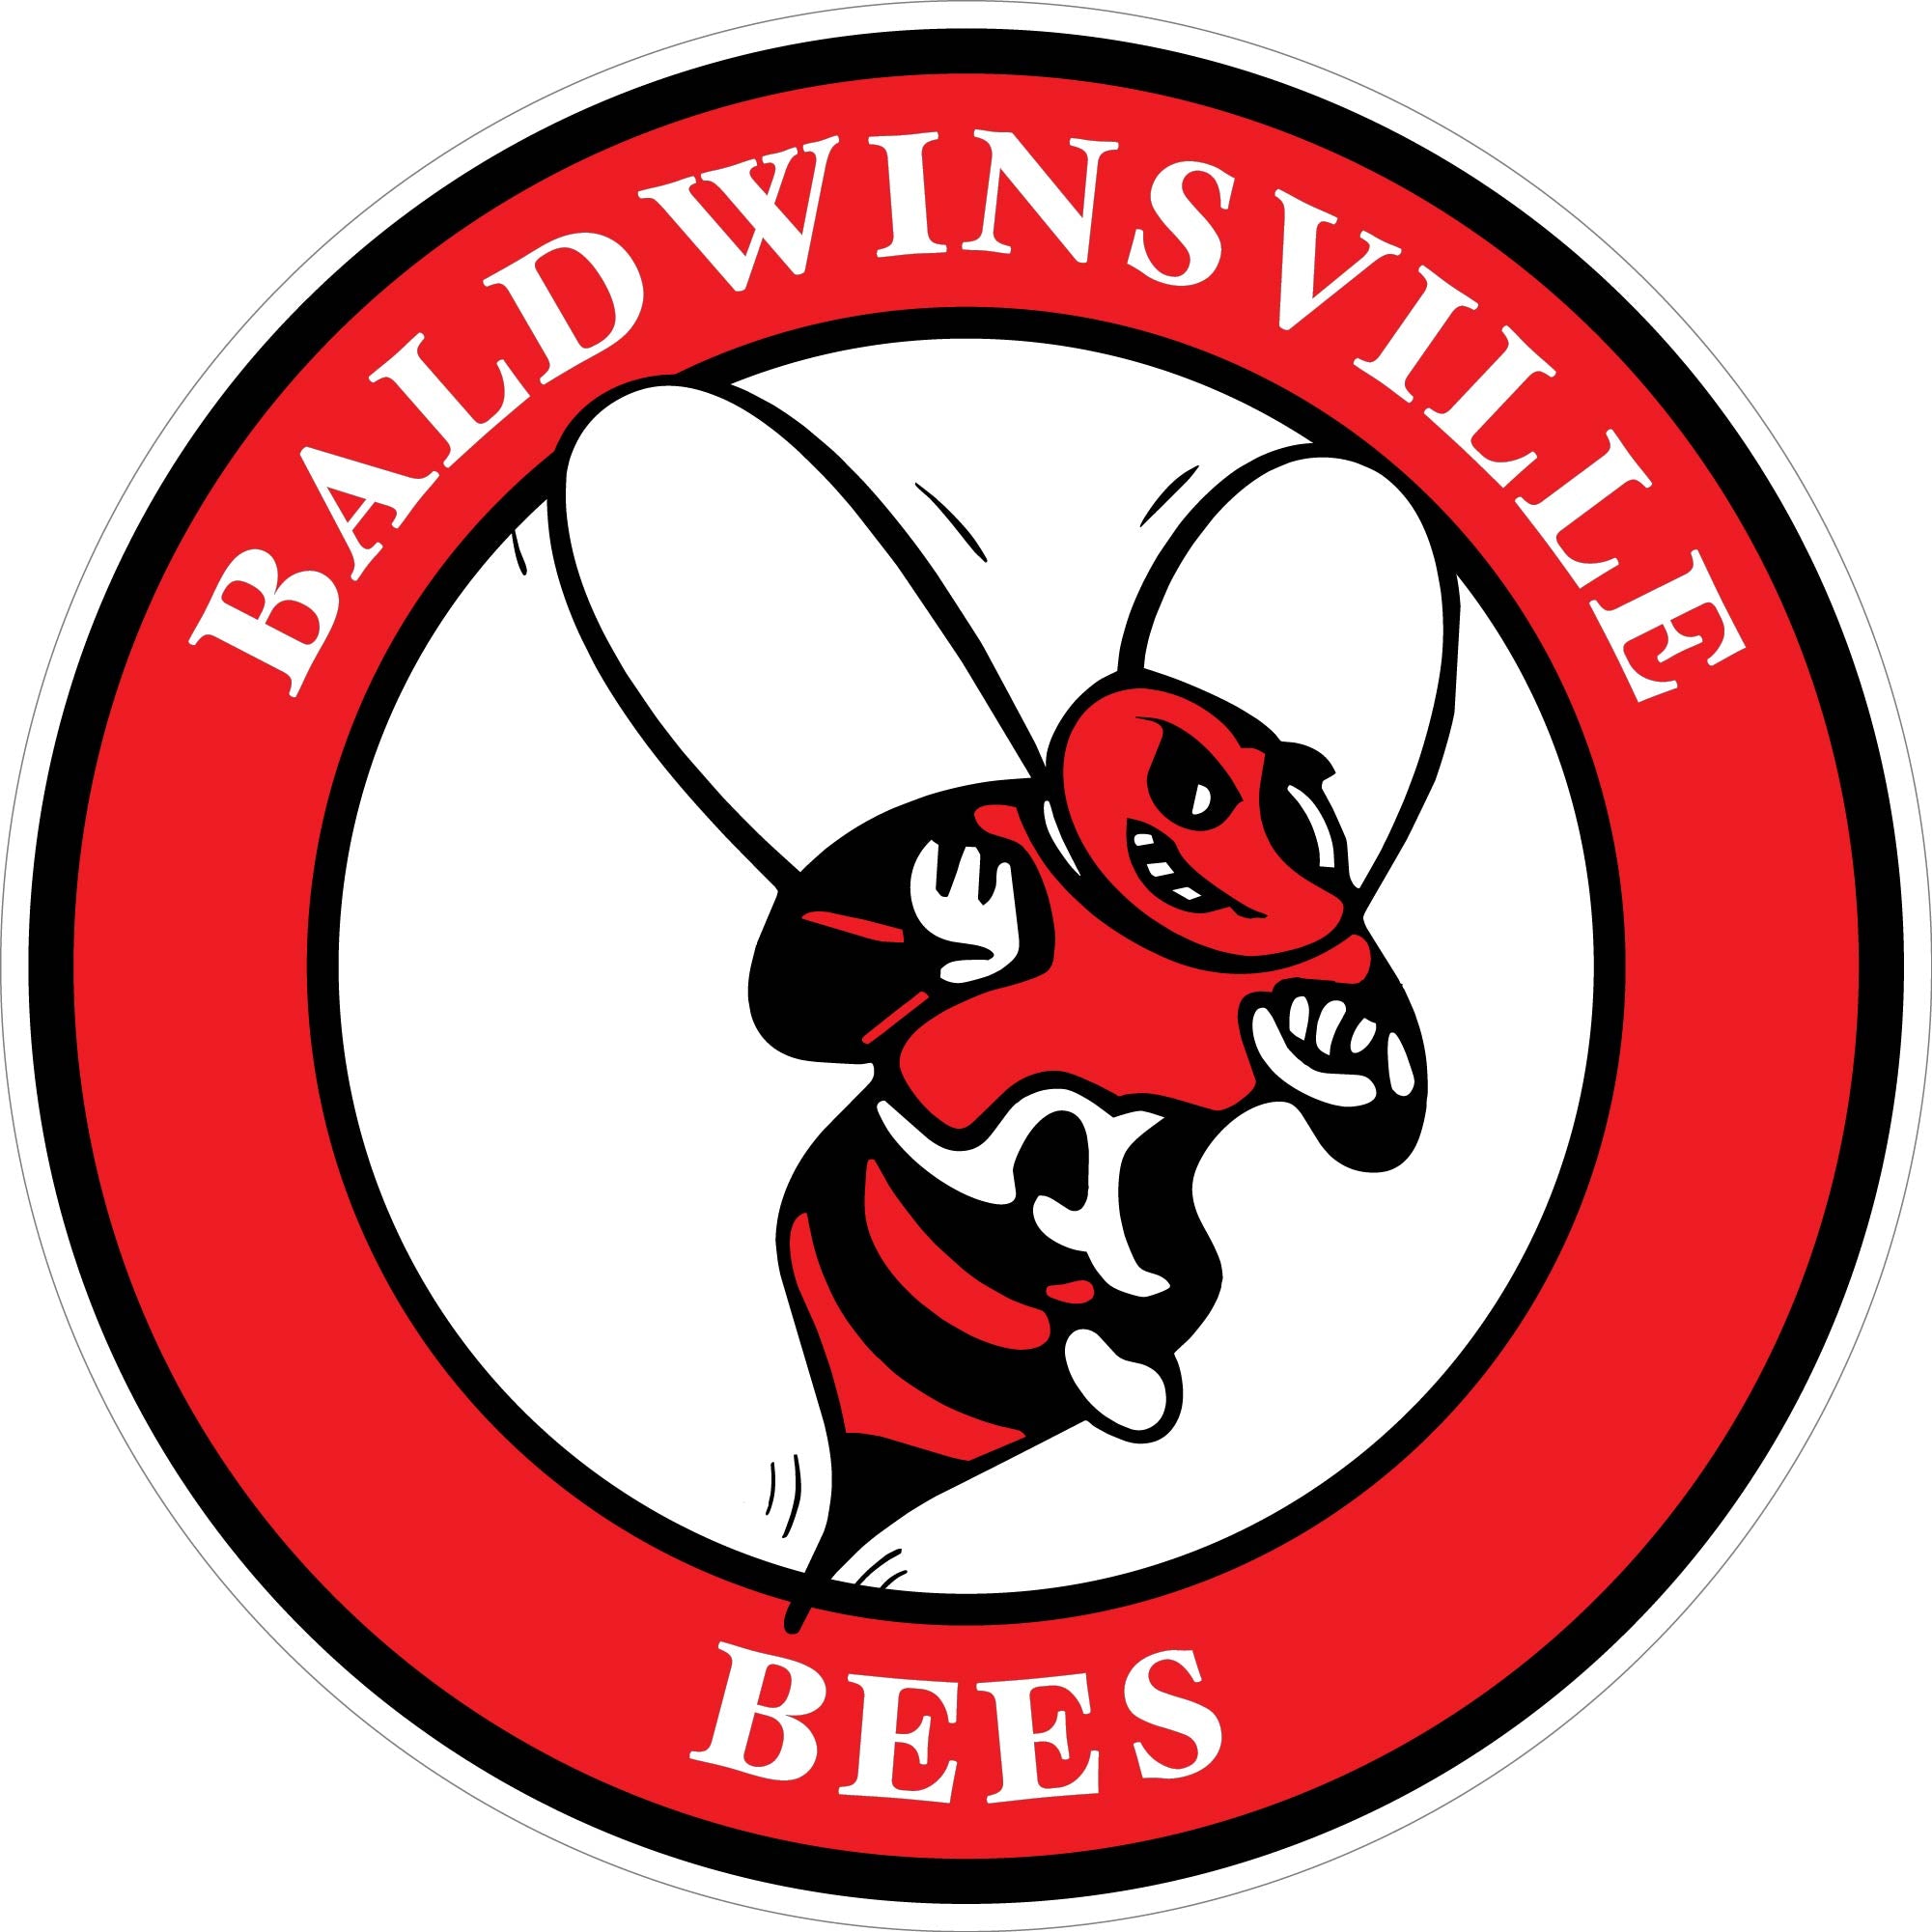 "Baldwinsville Bees" Circle Decal